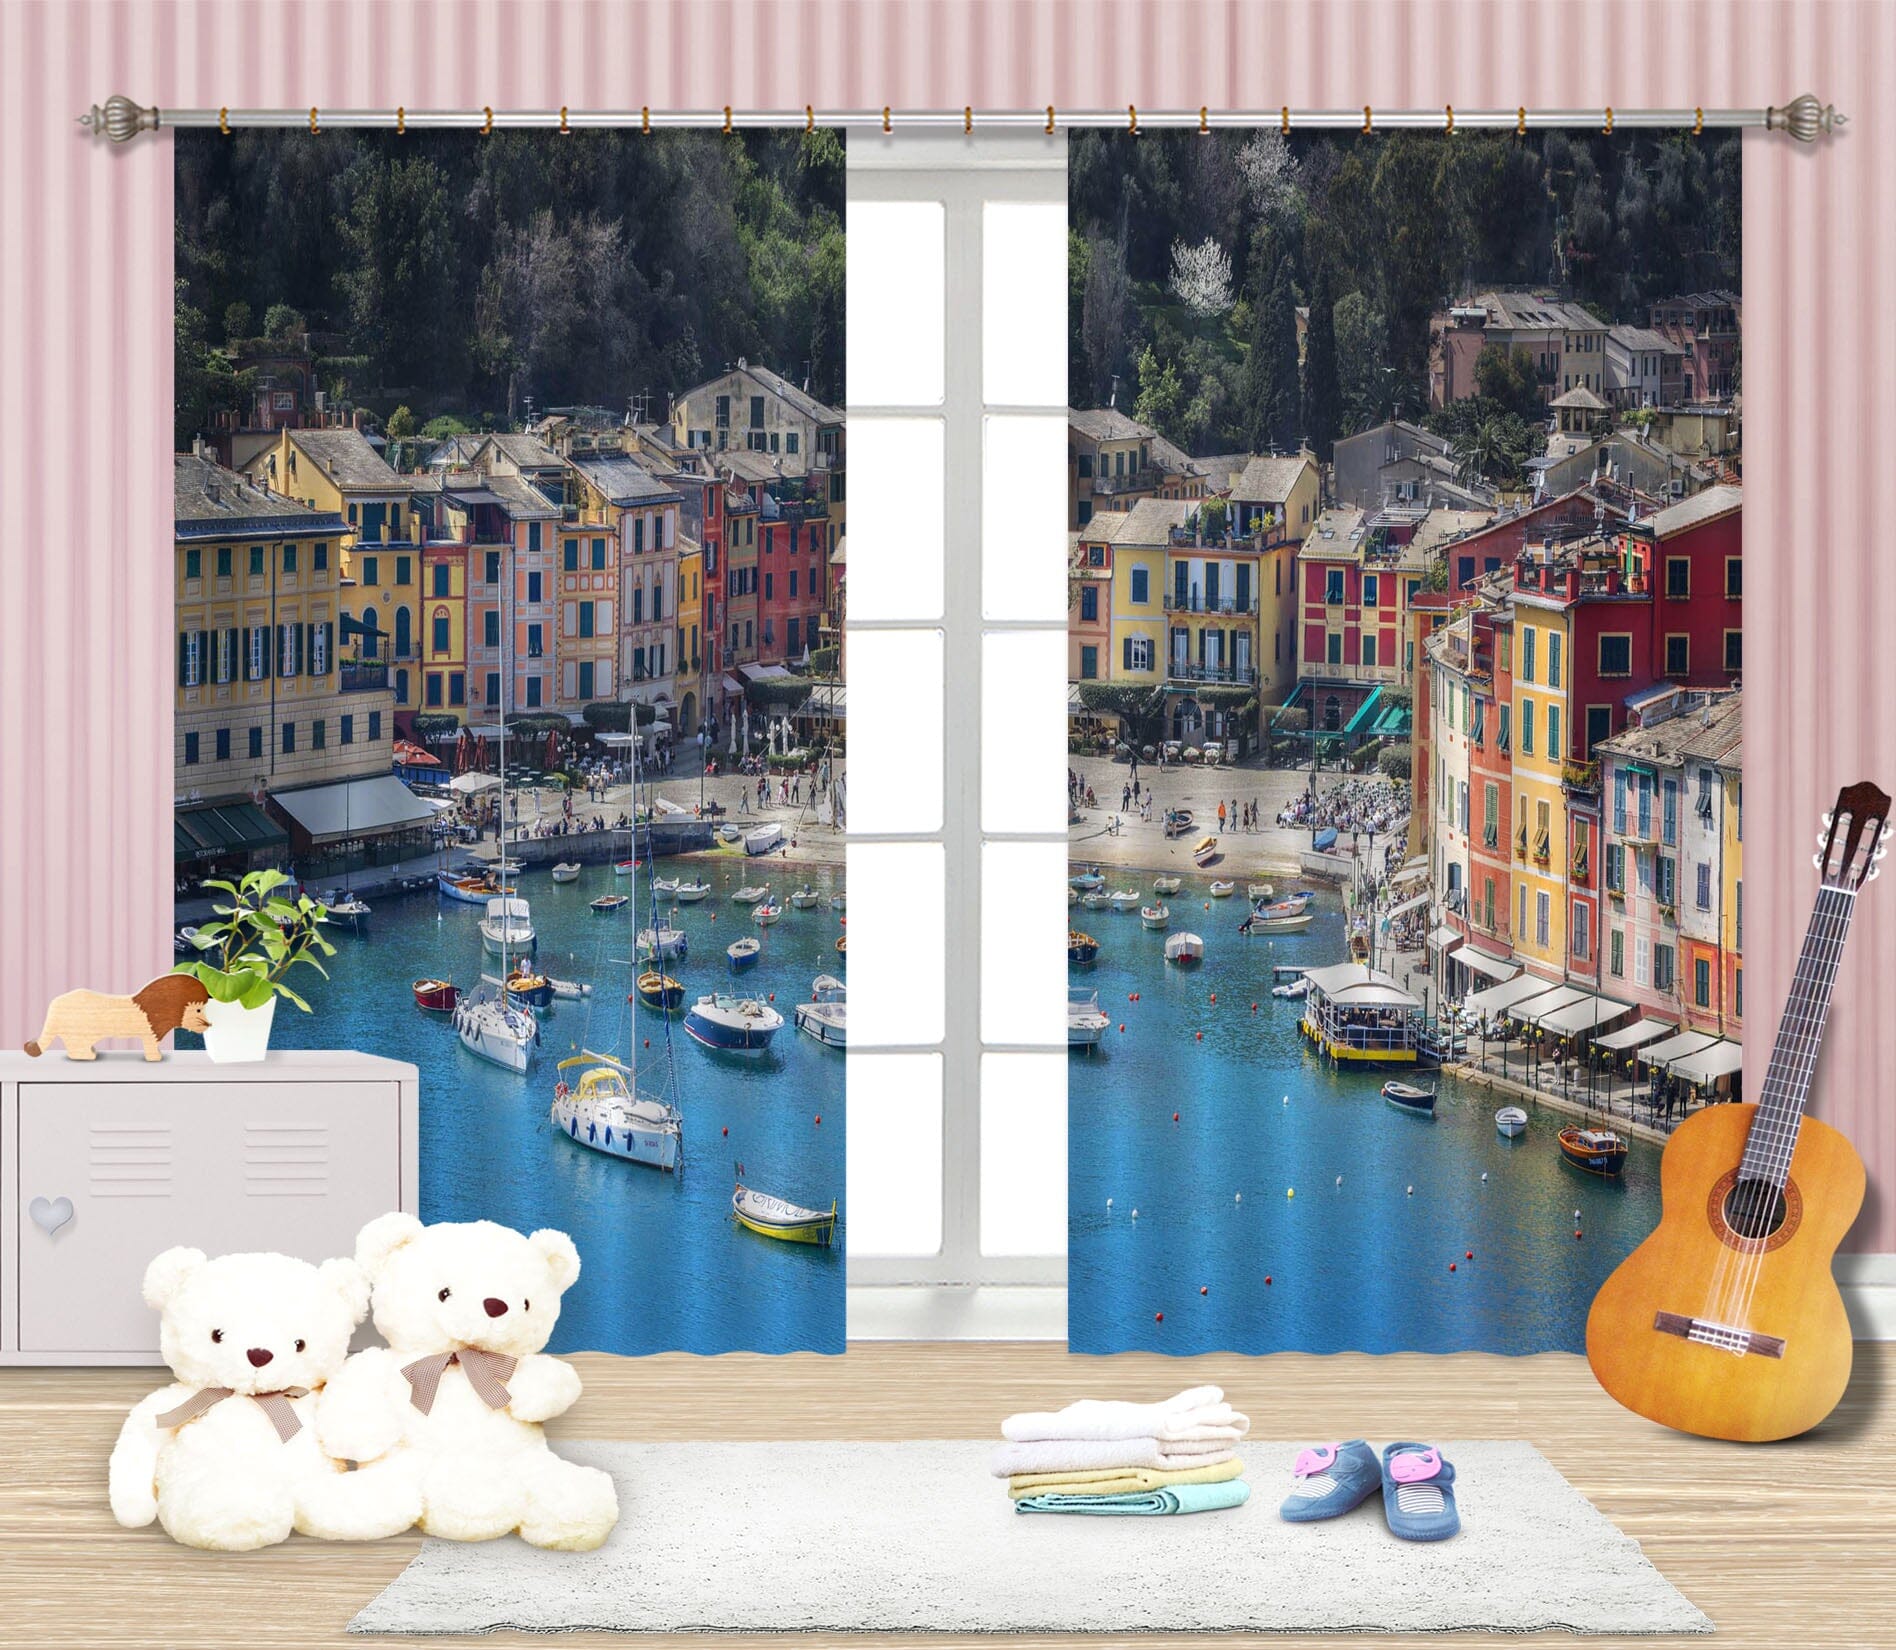 3D River Ship 169 Marco Carmassi Curtain Curtains Drapes Curtains AJ Creativity Home 